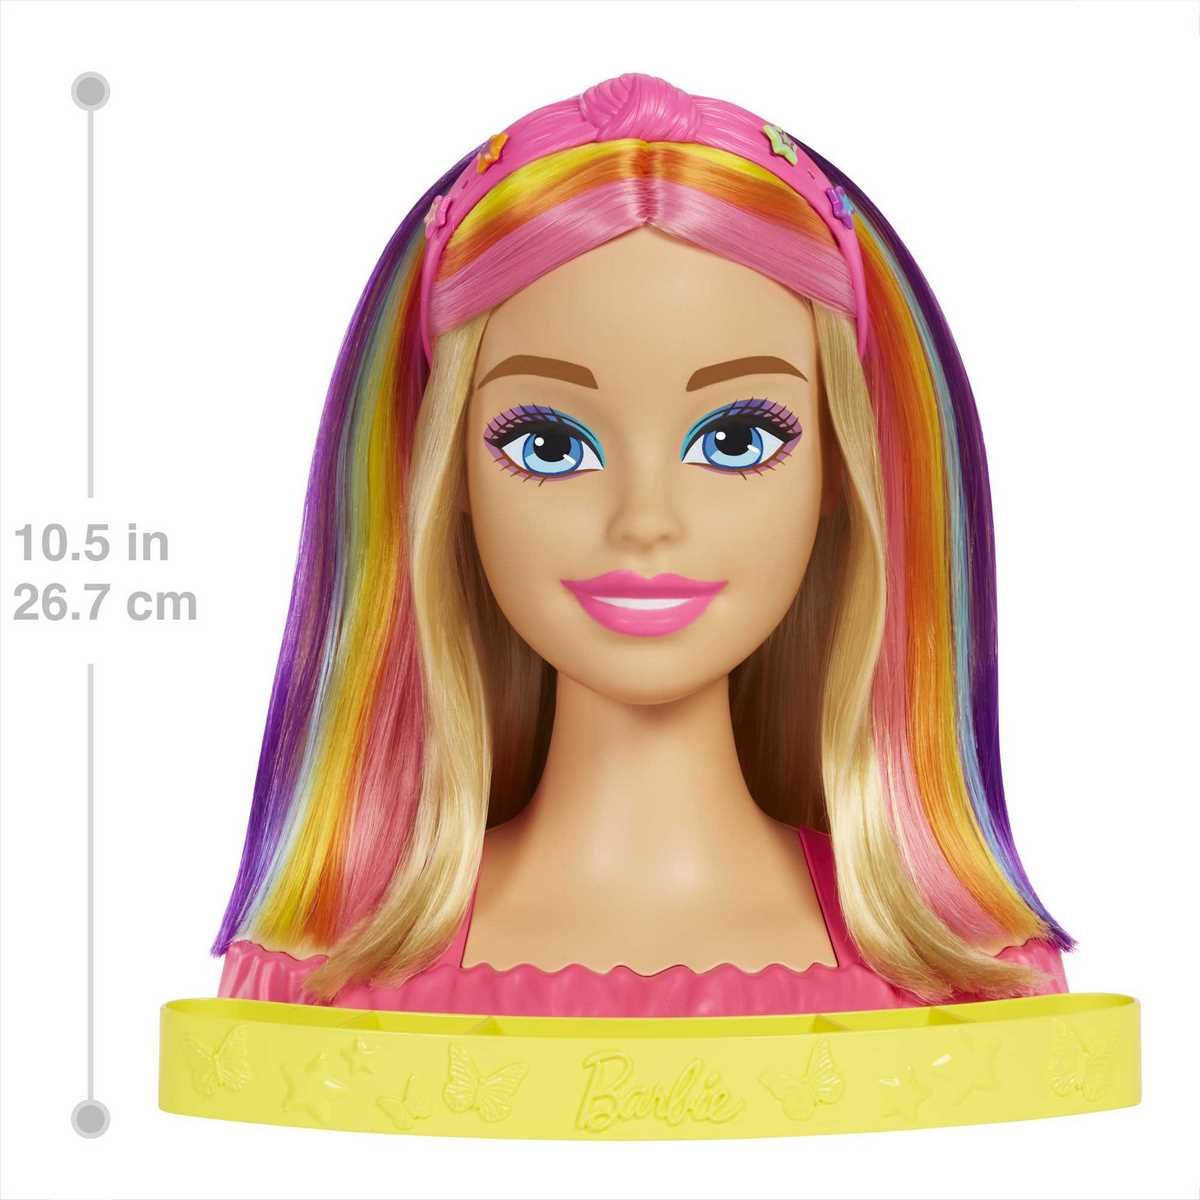 Les Grosses Têtes on X: La nouvelle #barbie qui fait débat. Une